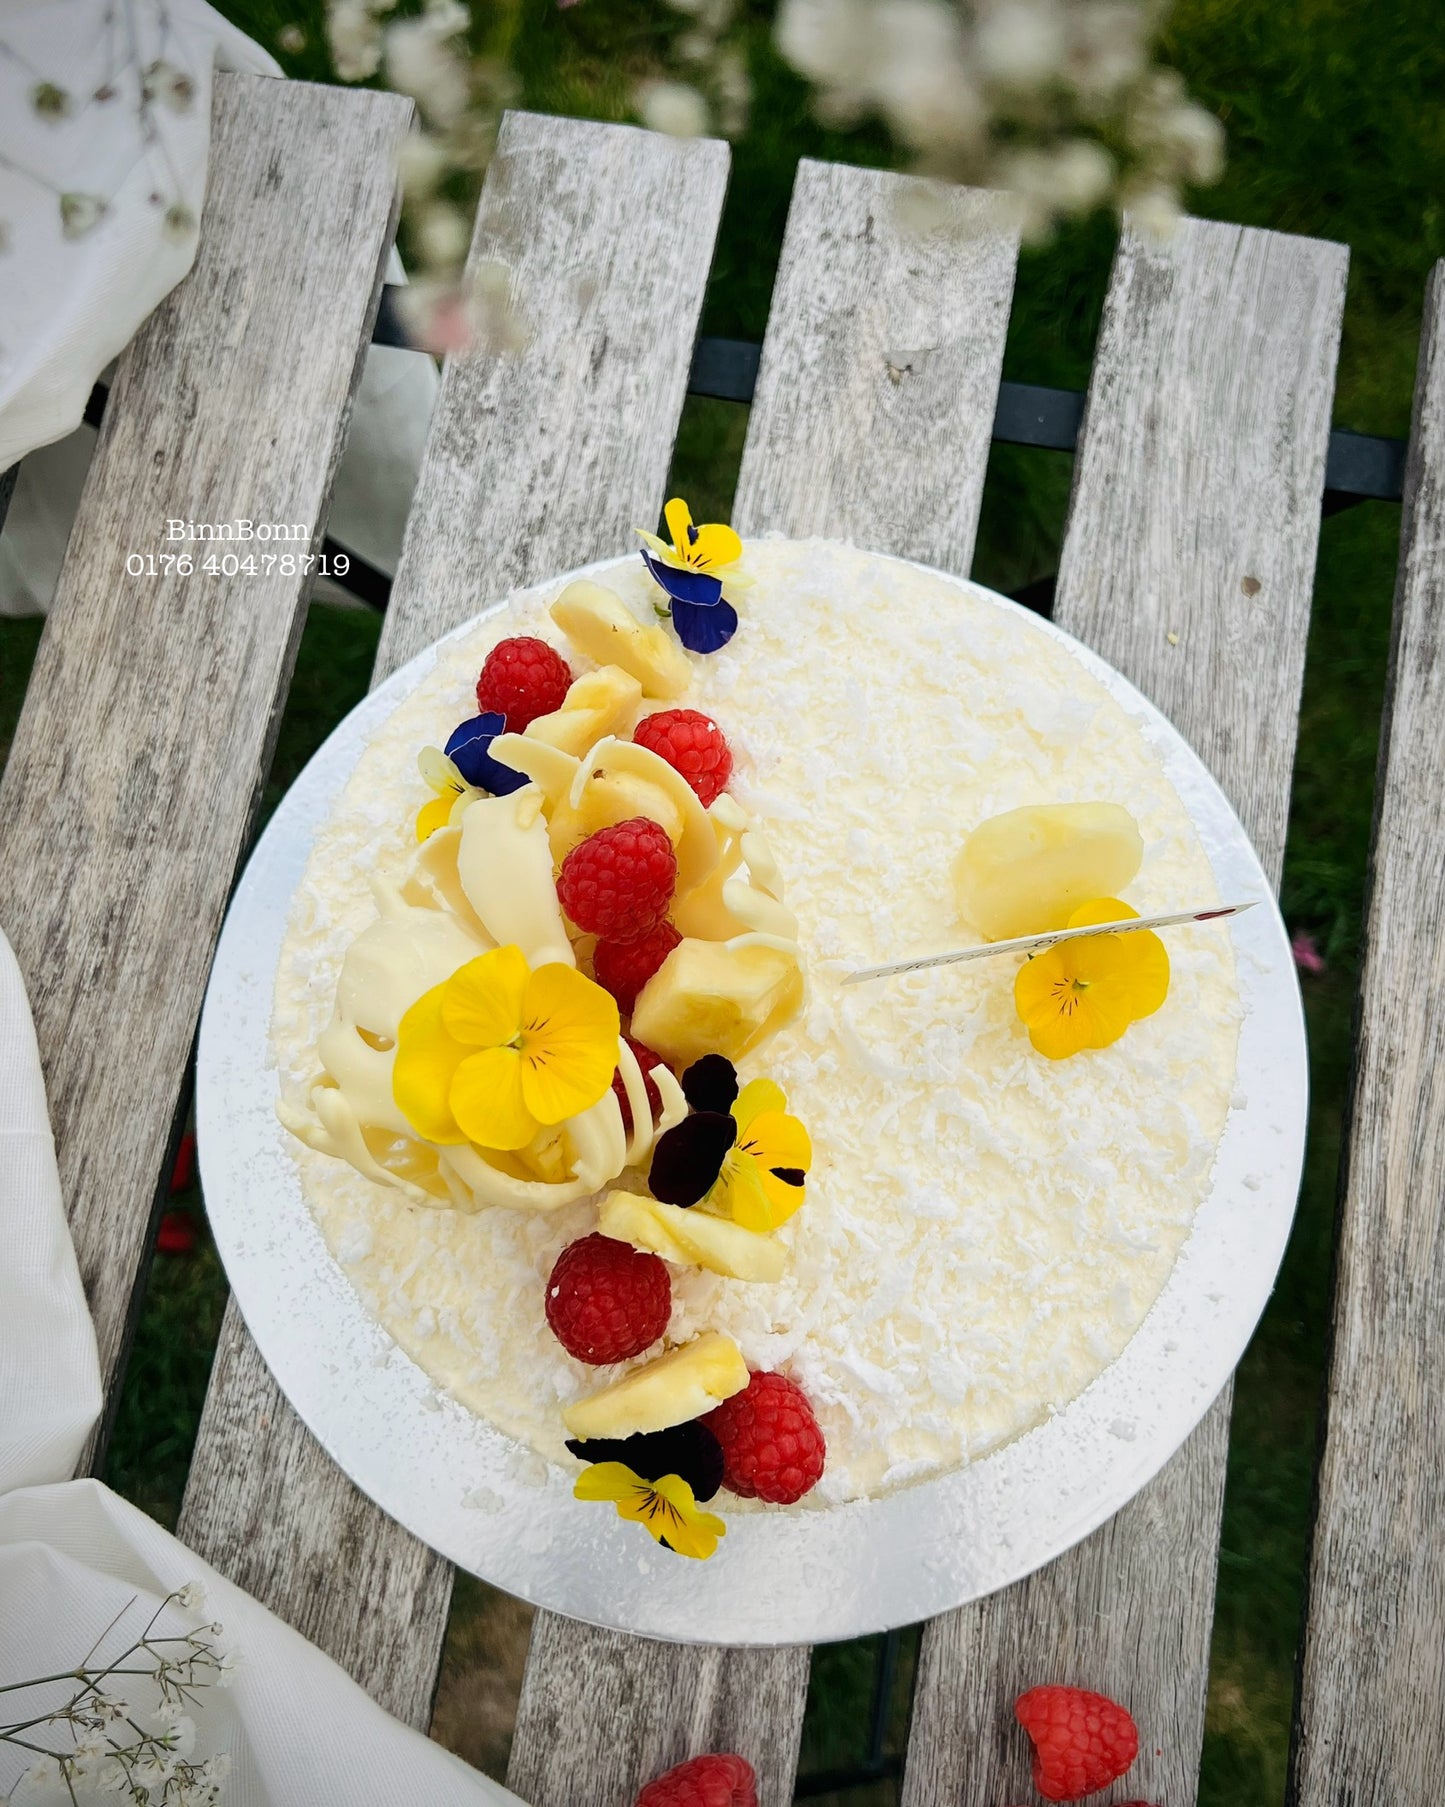 60. Torte "Tropical inspiration" Crêpes-Torte mit frischem Kokosfleisch und Ananas 22 cm